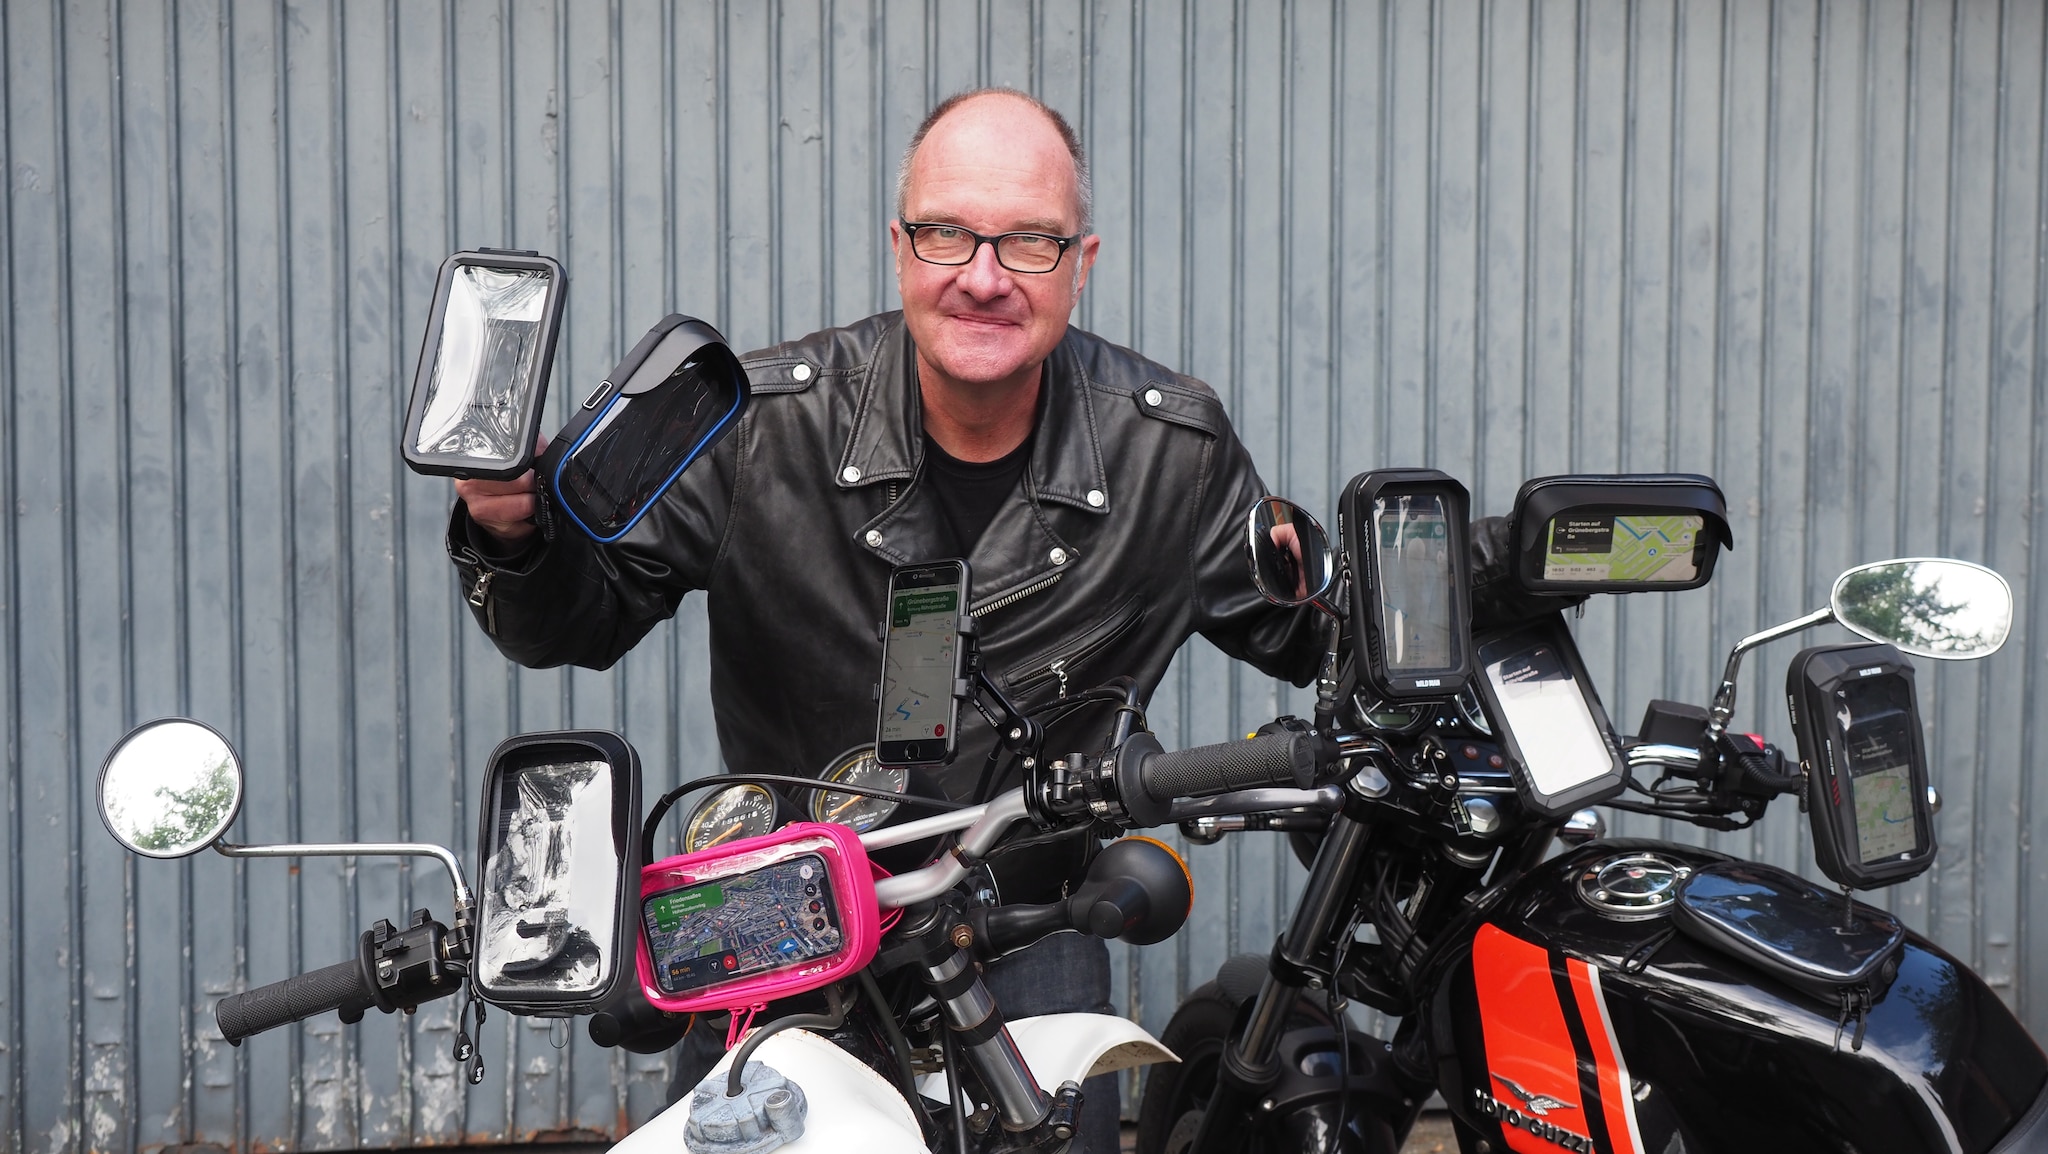 Universal Stabile Handy Halterung für Fahrrad Motorrad Scooter